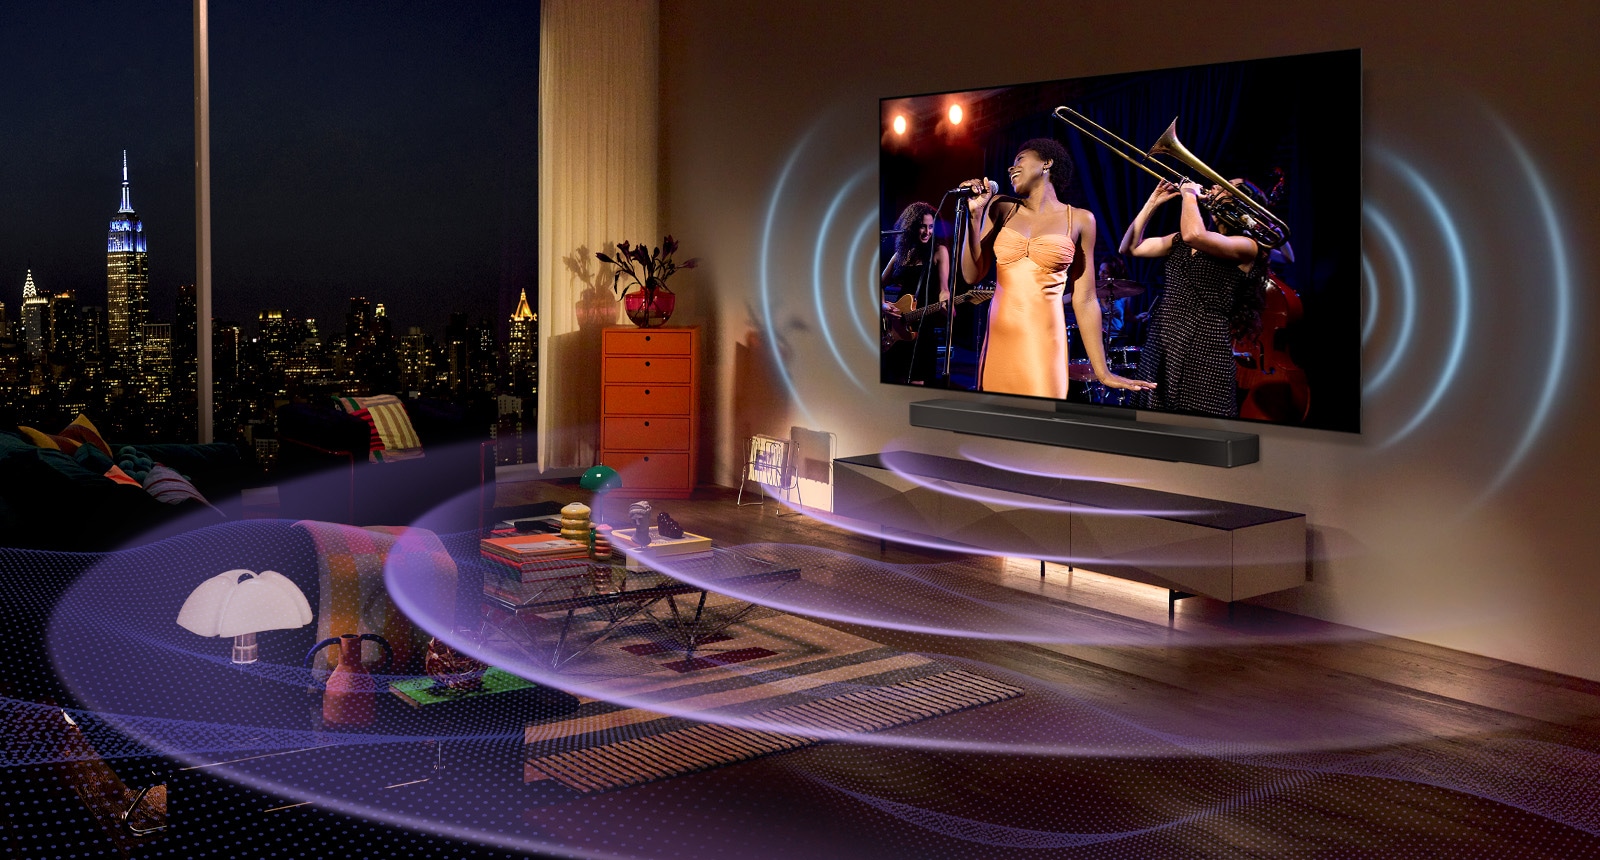 تصویری از تلویزیون OLED ال‌جی در اتاقی که کنسرت موسیقی را نشان می‌دهد. خطوط منحنی آبی که صدای تلویزیون را به تصویر می‌کشند و خطوط منحنی بنفش که صدای ساندبار را بیان می‌کنند فضا را پر می‌کنند.